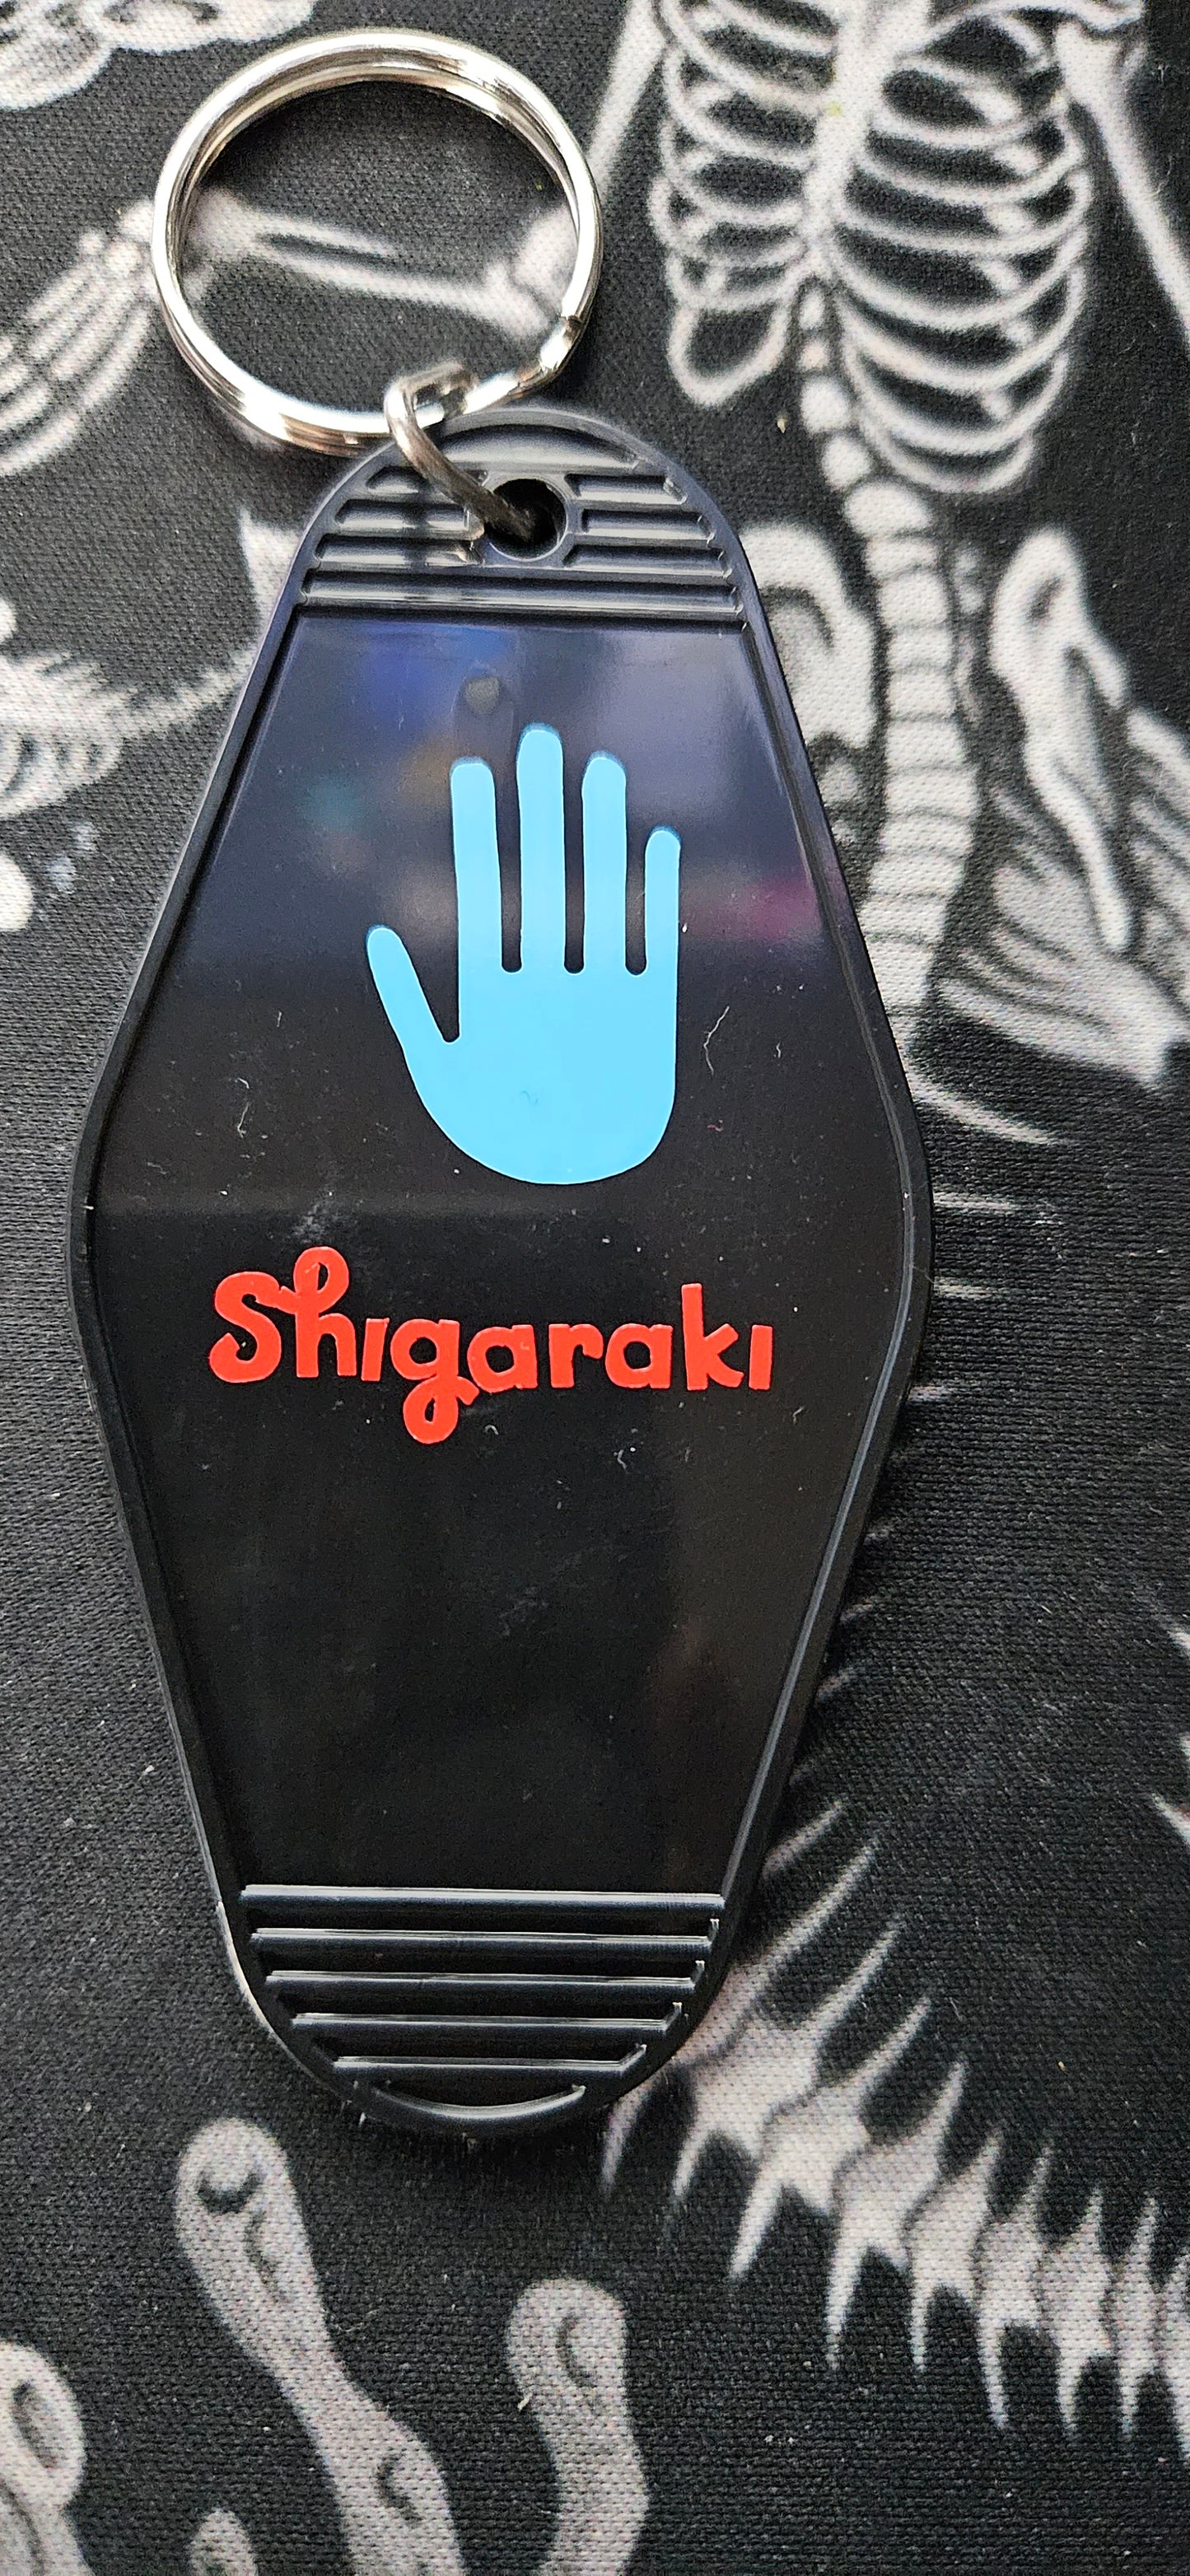 Shigaraki Motel Keychain